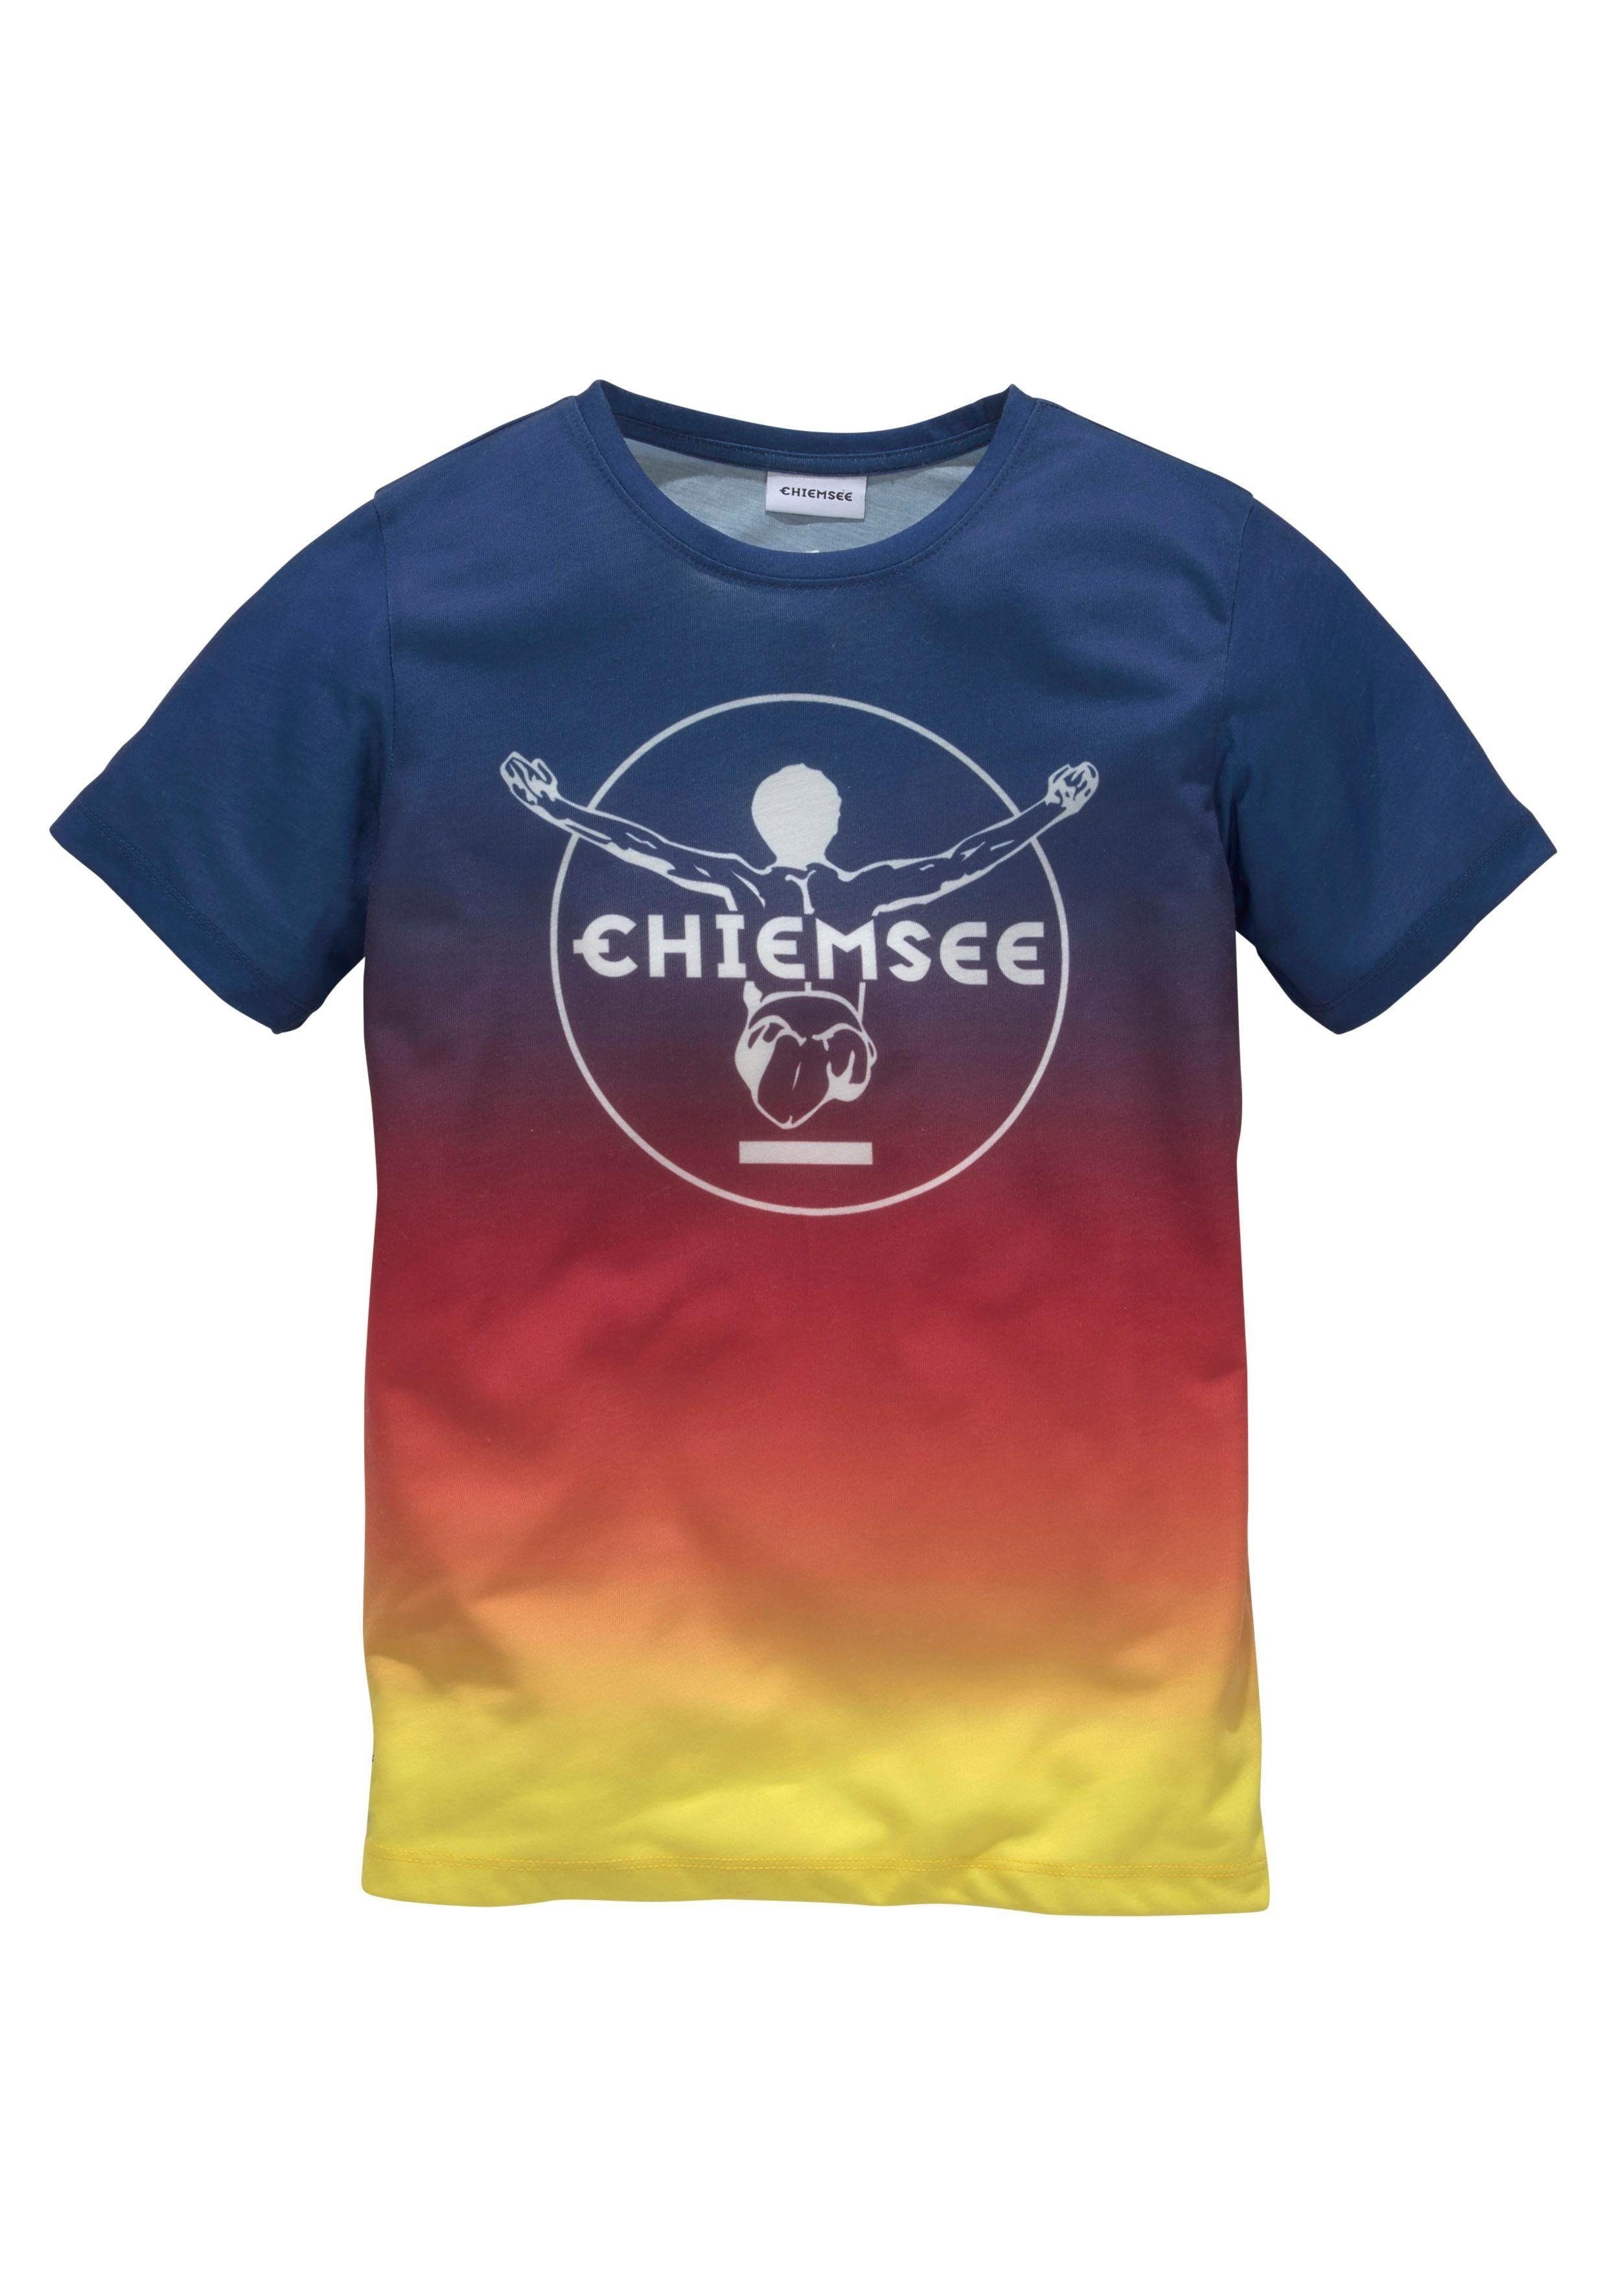 Druck T-Shirt Chiemsee mit im Farbverlauf vorn